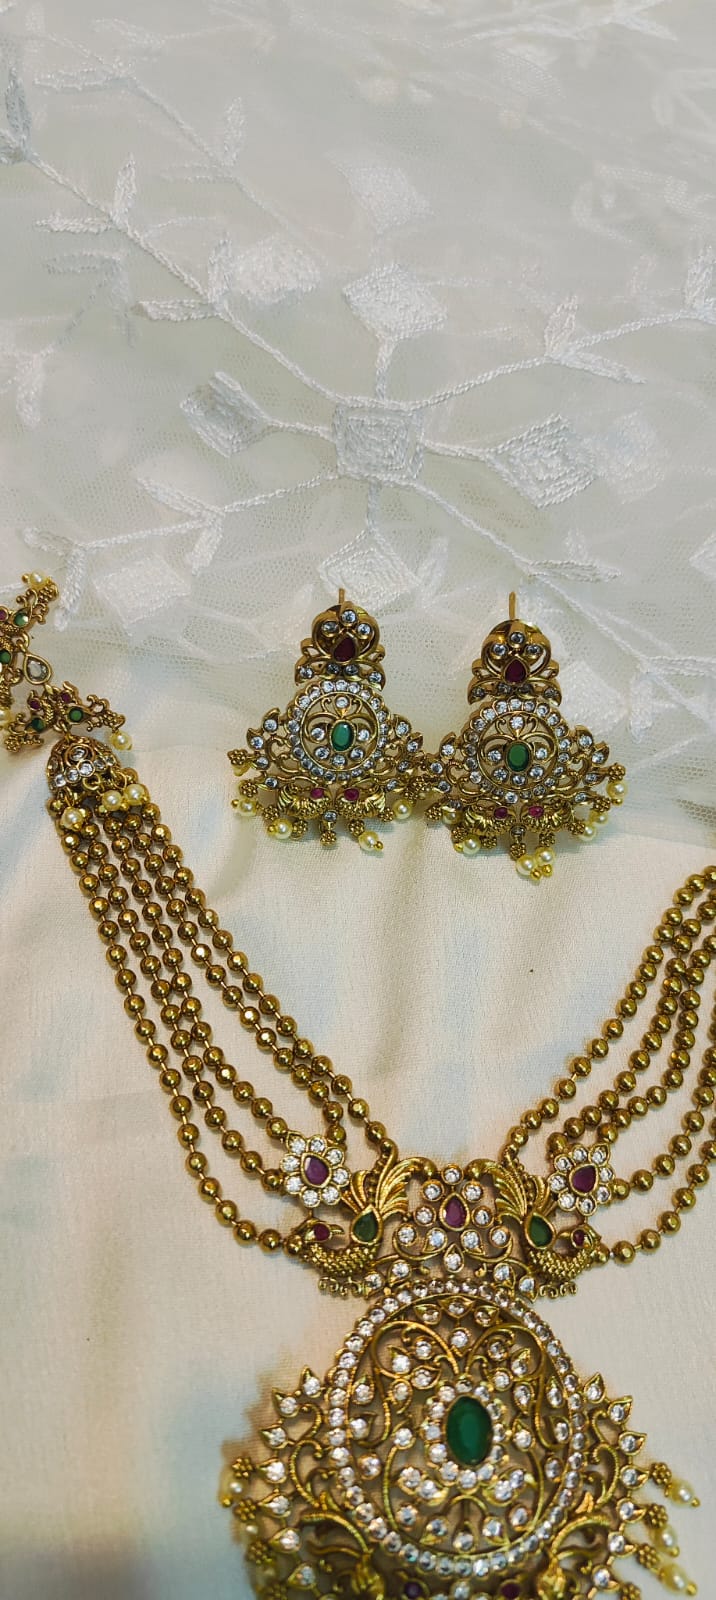 Golden antique finish necklace set